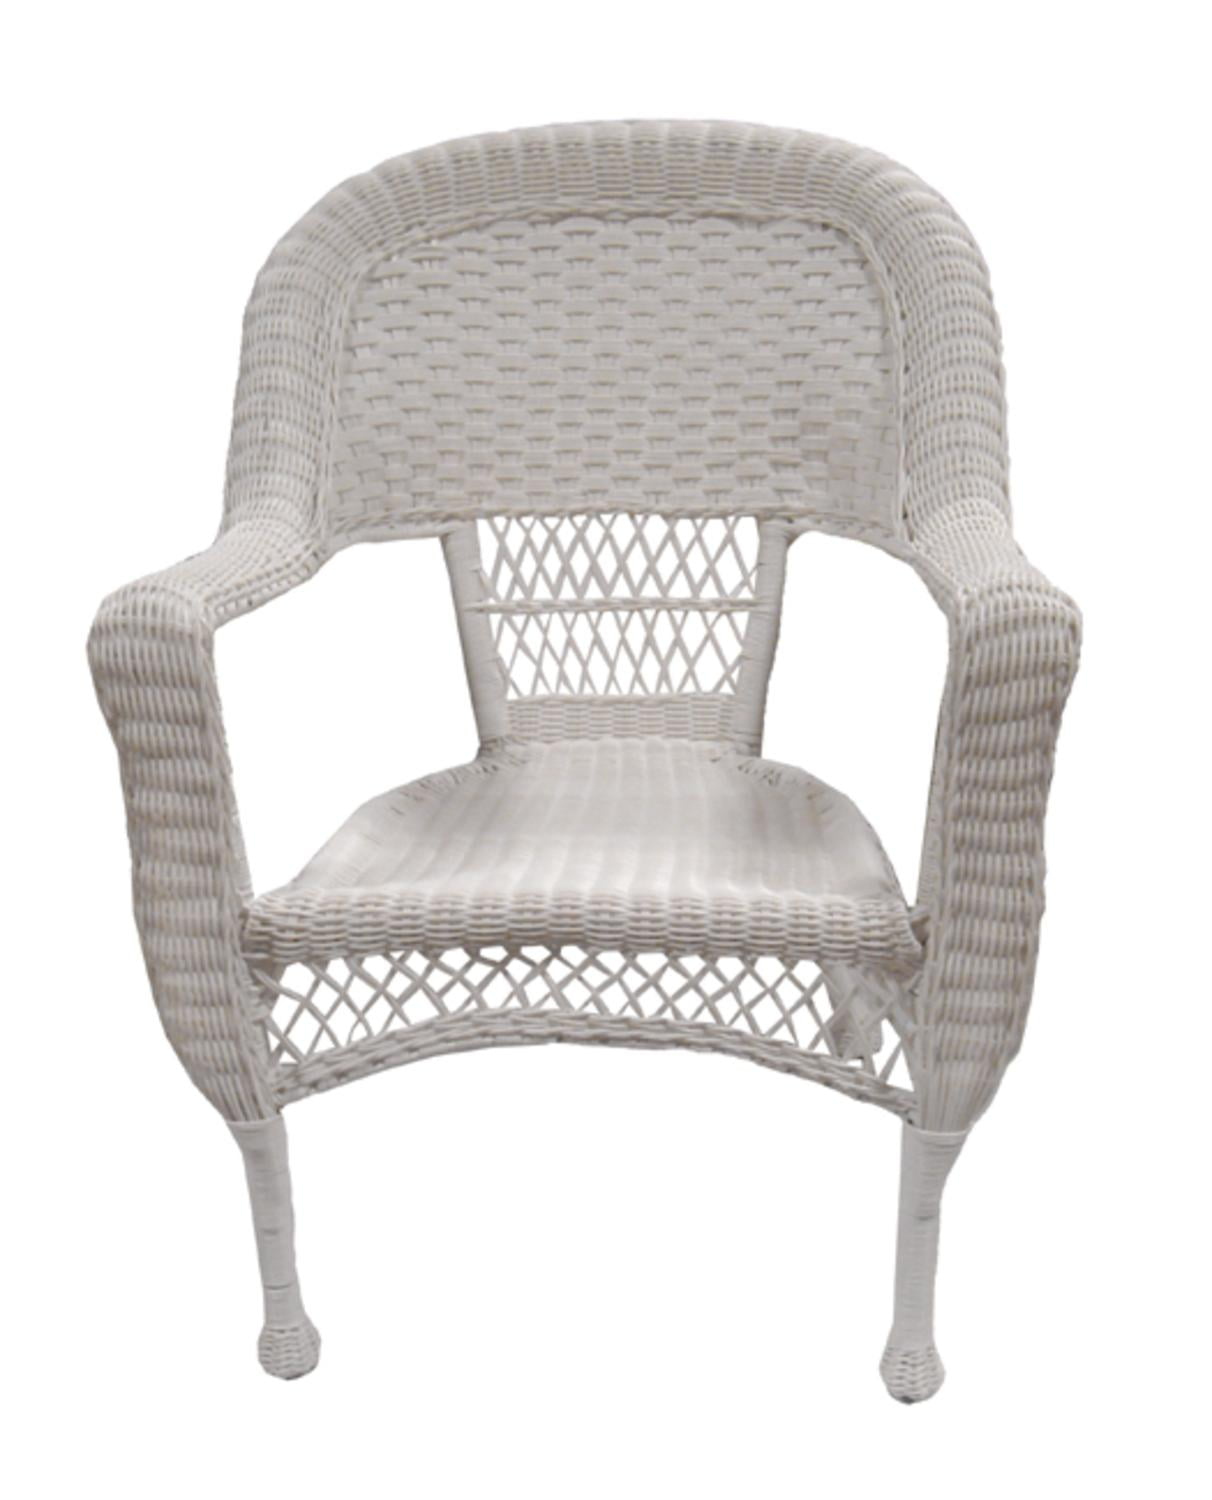 Stunning Photos Of White Resin Wicker Chairs Concept | Lagulexa